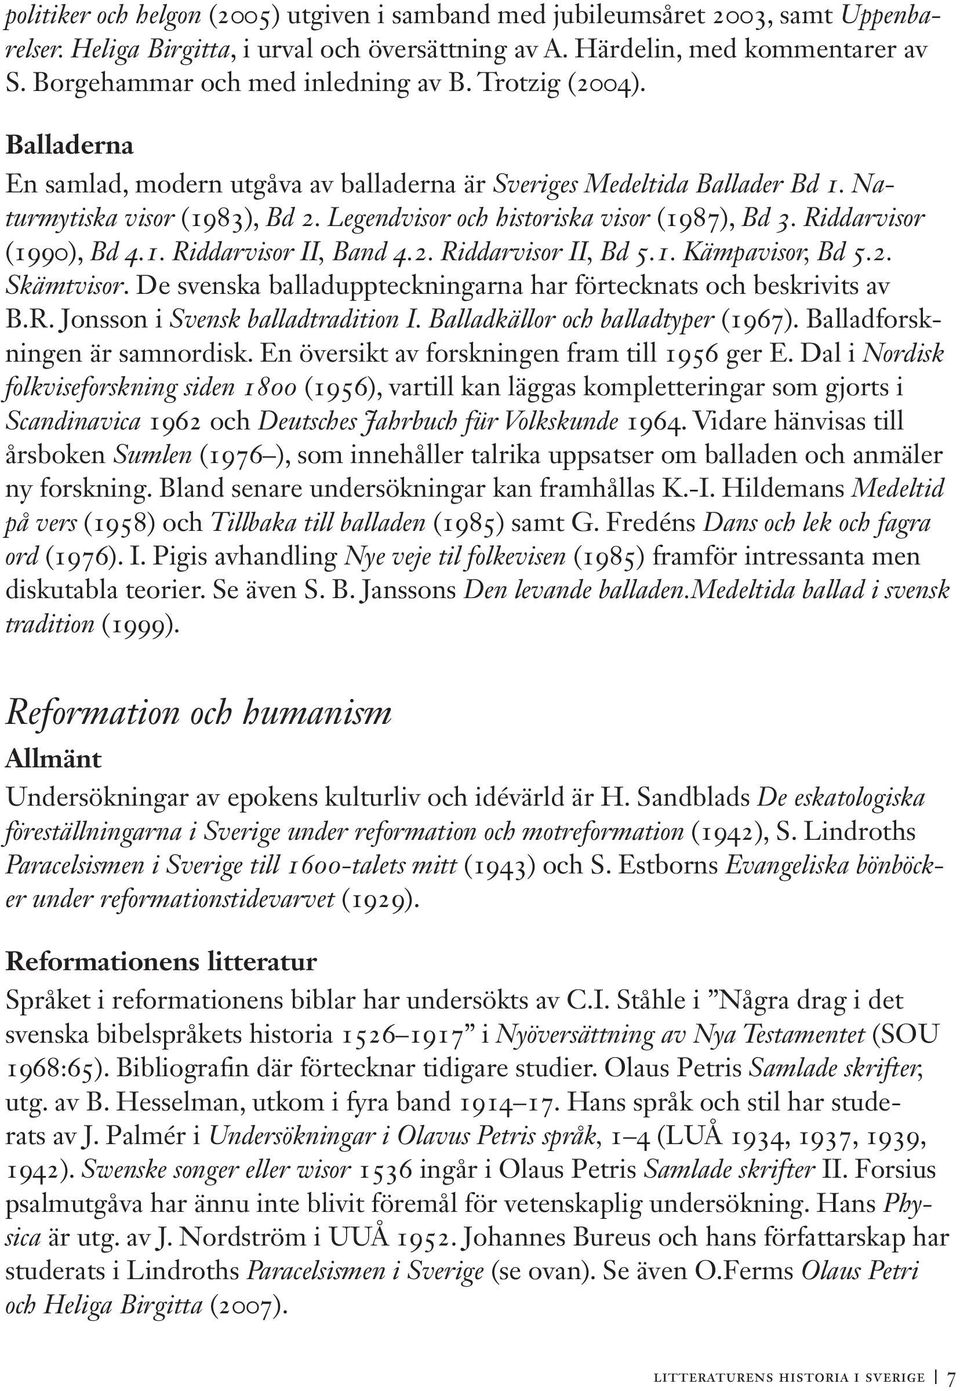 Legendvisor och historiska visor (1987), Bd 3. Riddarvisor (1990), Bd 4.1. Riddarvisor II, Band 4.2. Riddarvisor II, Bd 5.1. Kämpavisor, Bd 5.2. Skämtvisor.